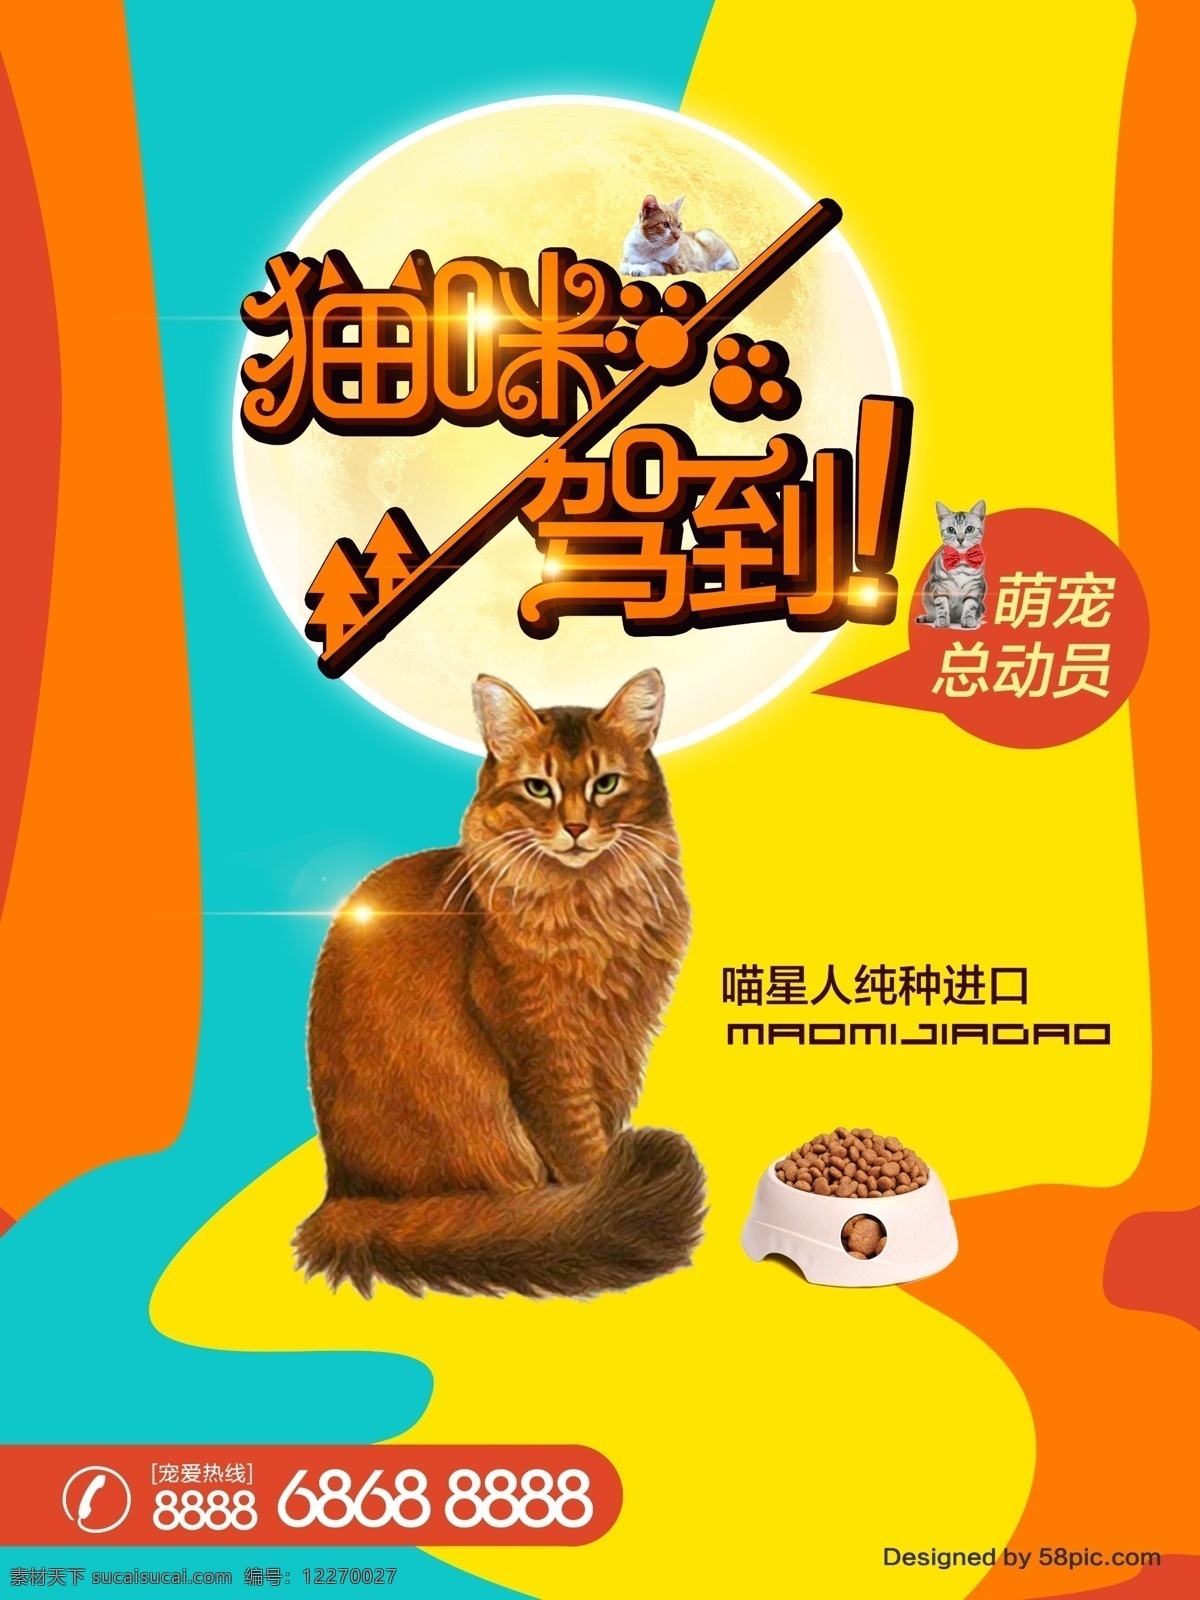 萌 宠 宠物 店 猫咪 海报 模板 萌宠 猫 猫星人 单页 宠物海报